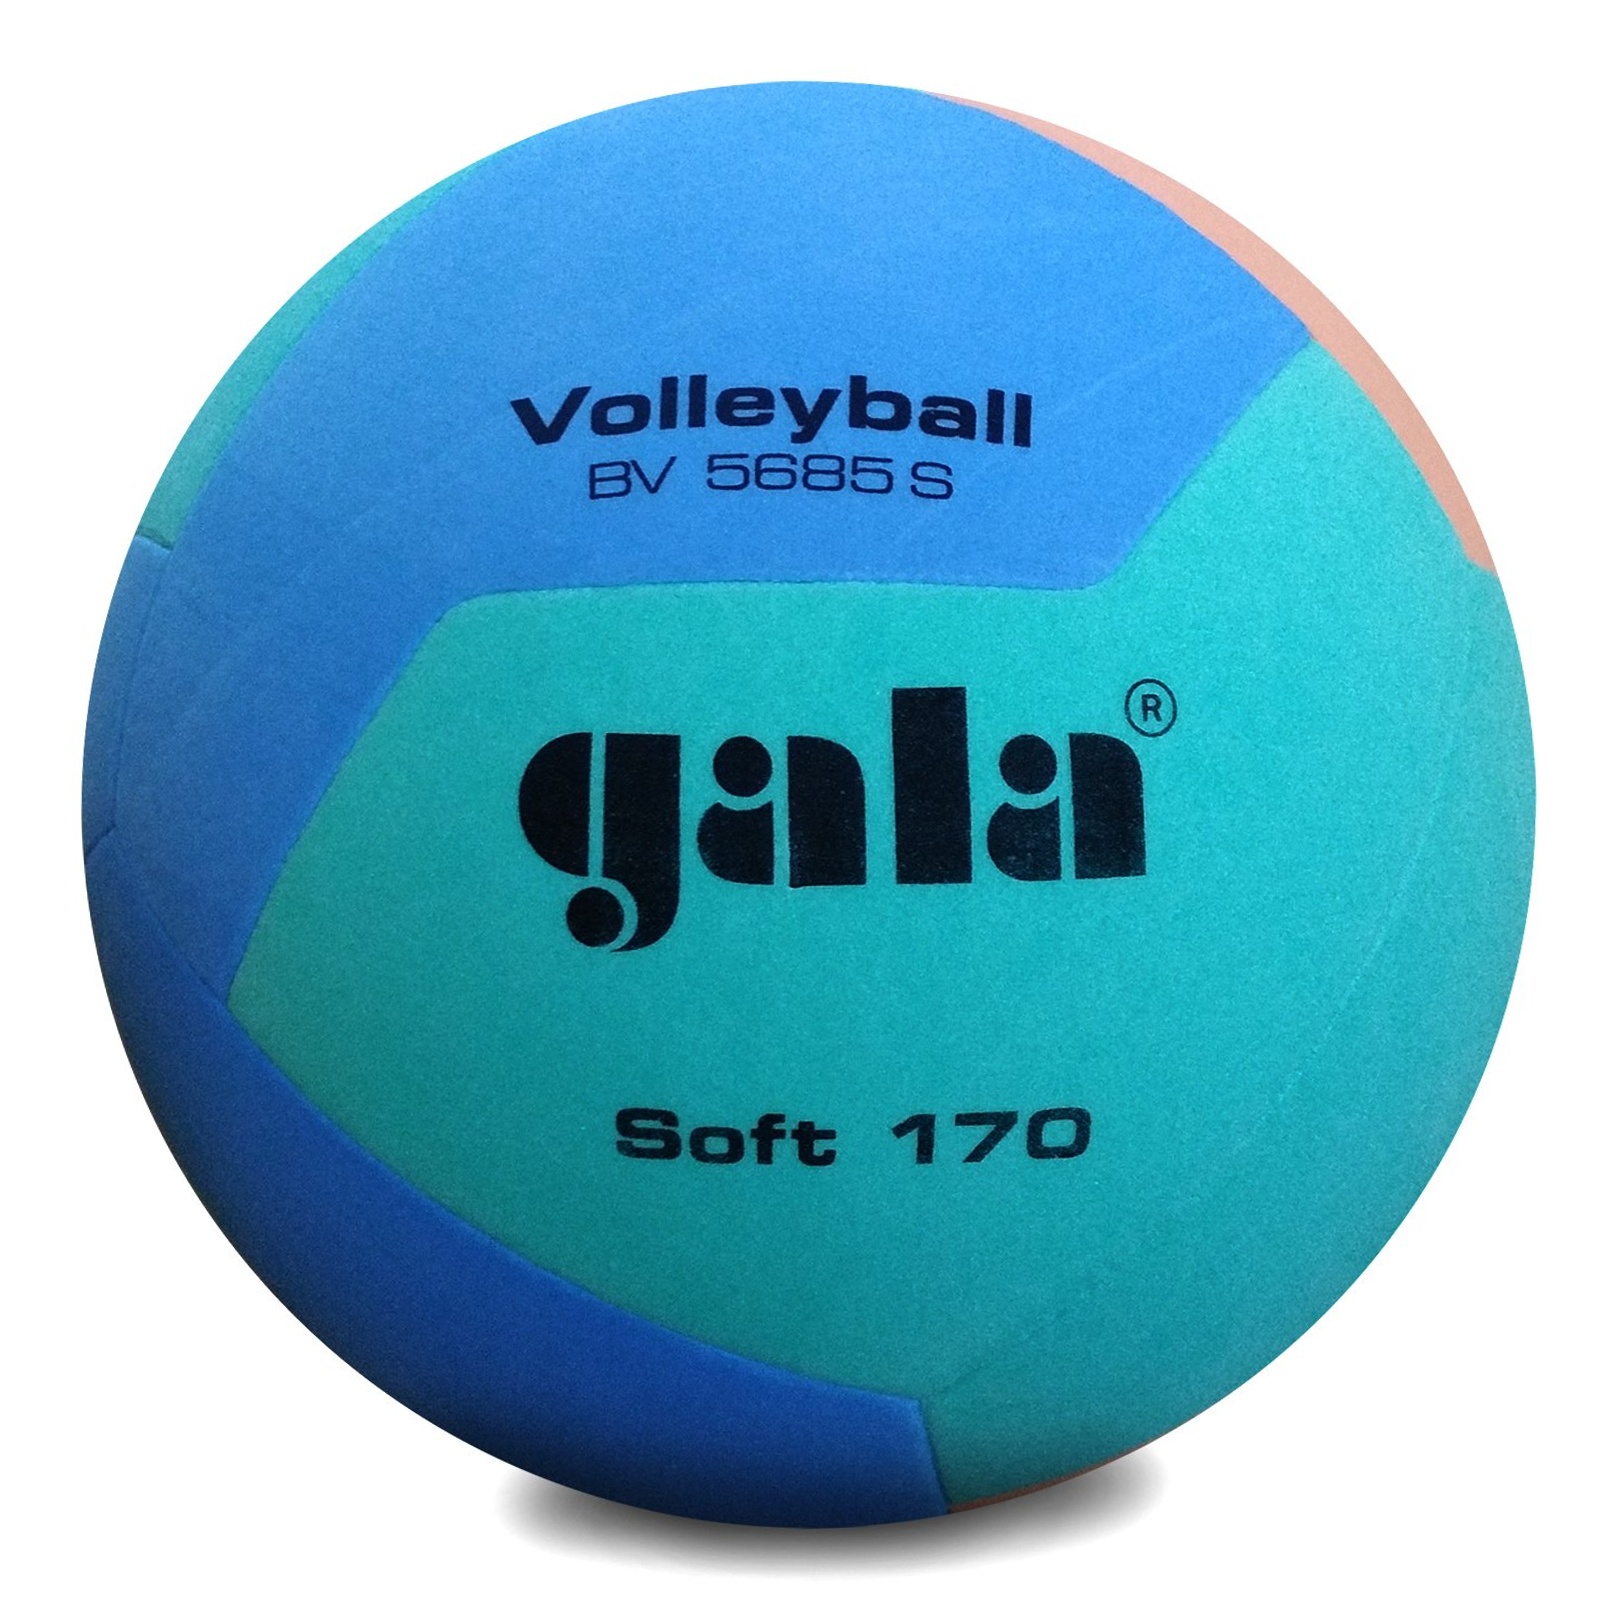 Volejbalový míč GALA Soft 170 BV5685S zeleno-oranžovo-modrý